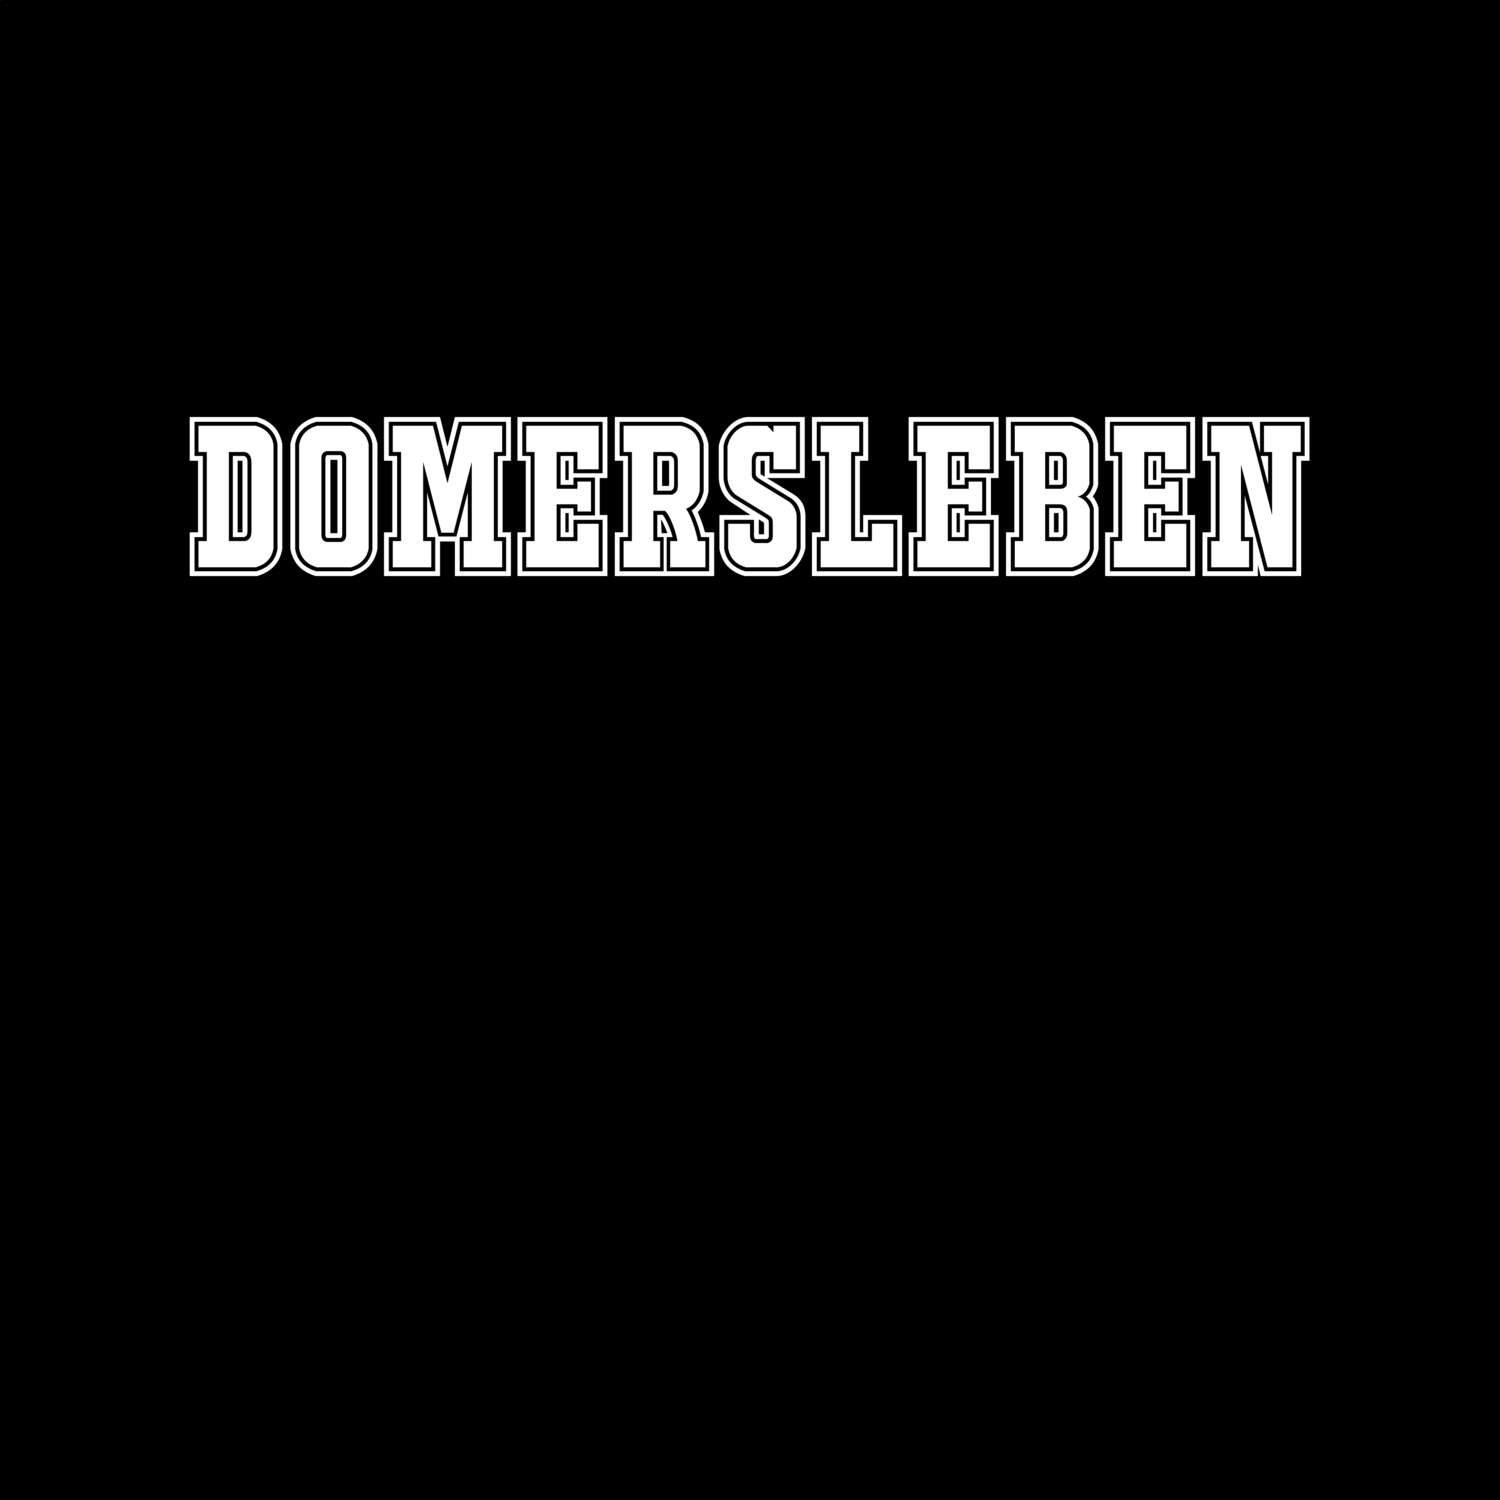 Domersleben T-Shirt »Classic«